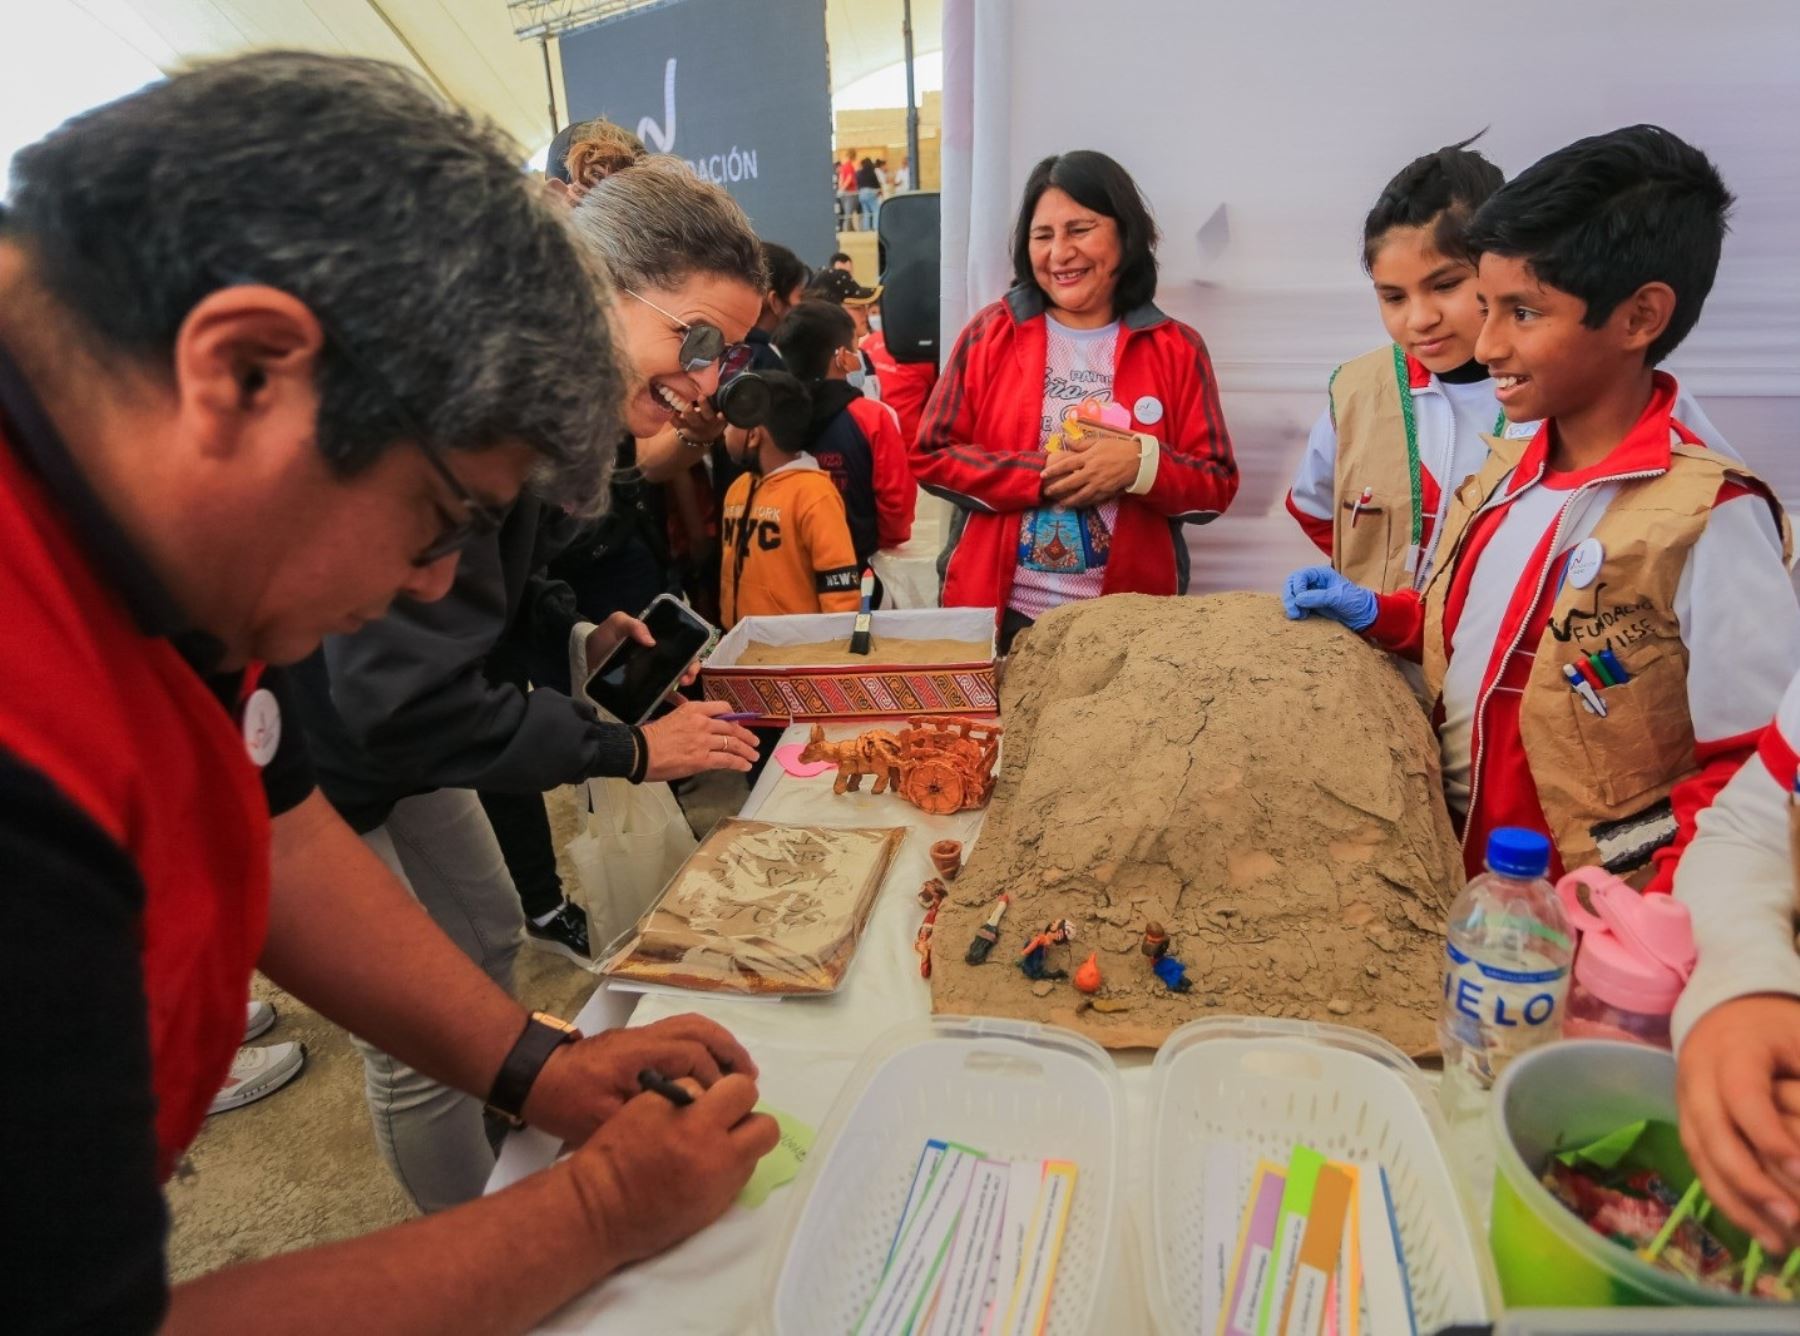 En el marco del programa de los Museos Abiertos, este domingo 1 de octubre escolares liberteños presentarán proyectos desarrollados en el complejo arqueológico El Brujo.